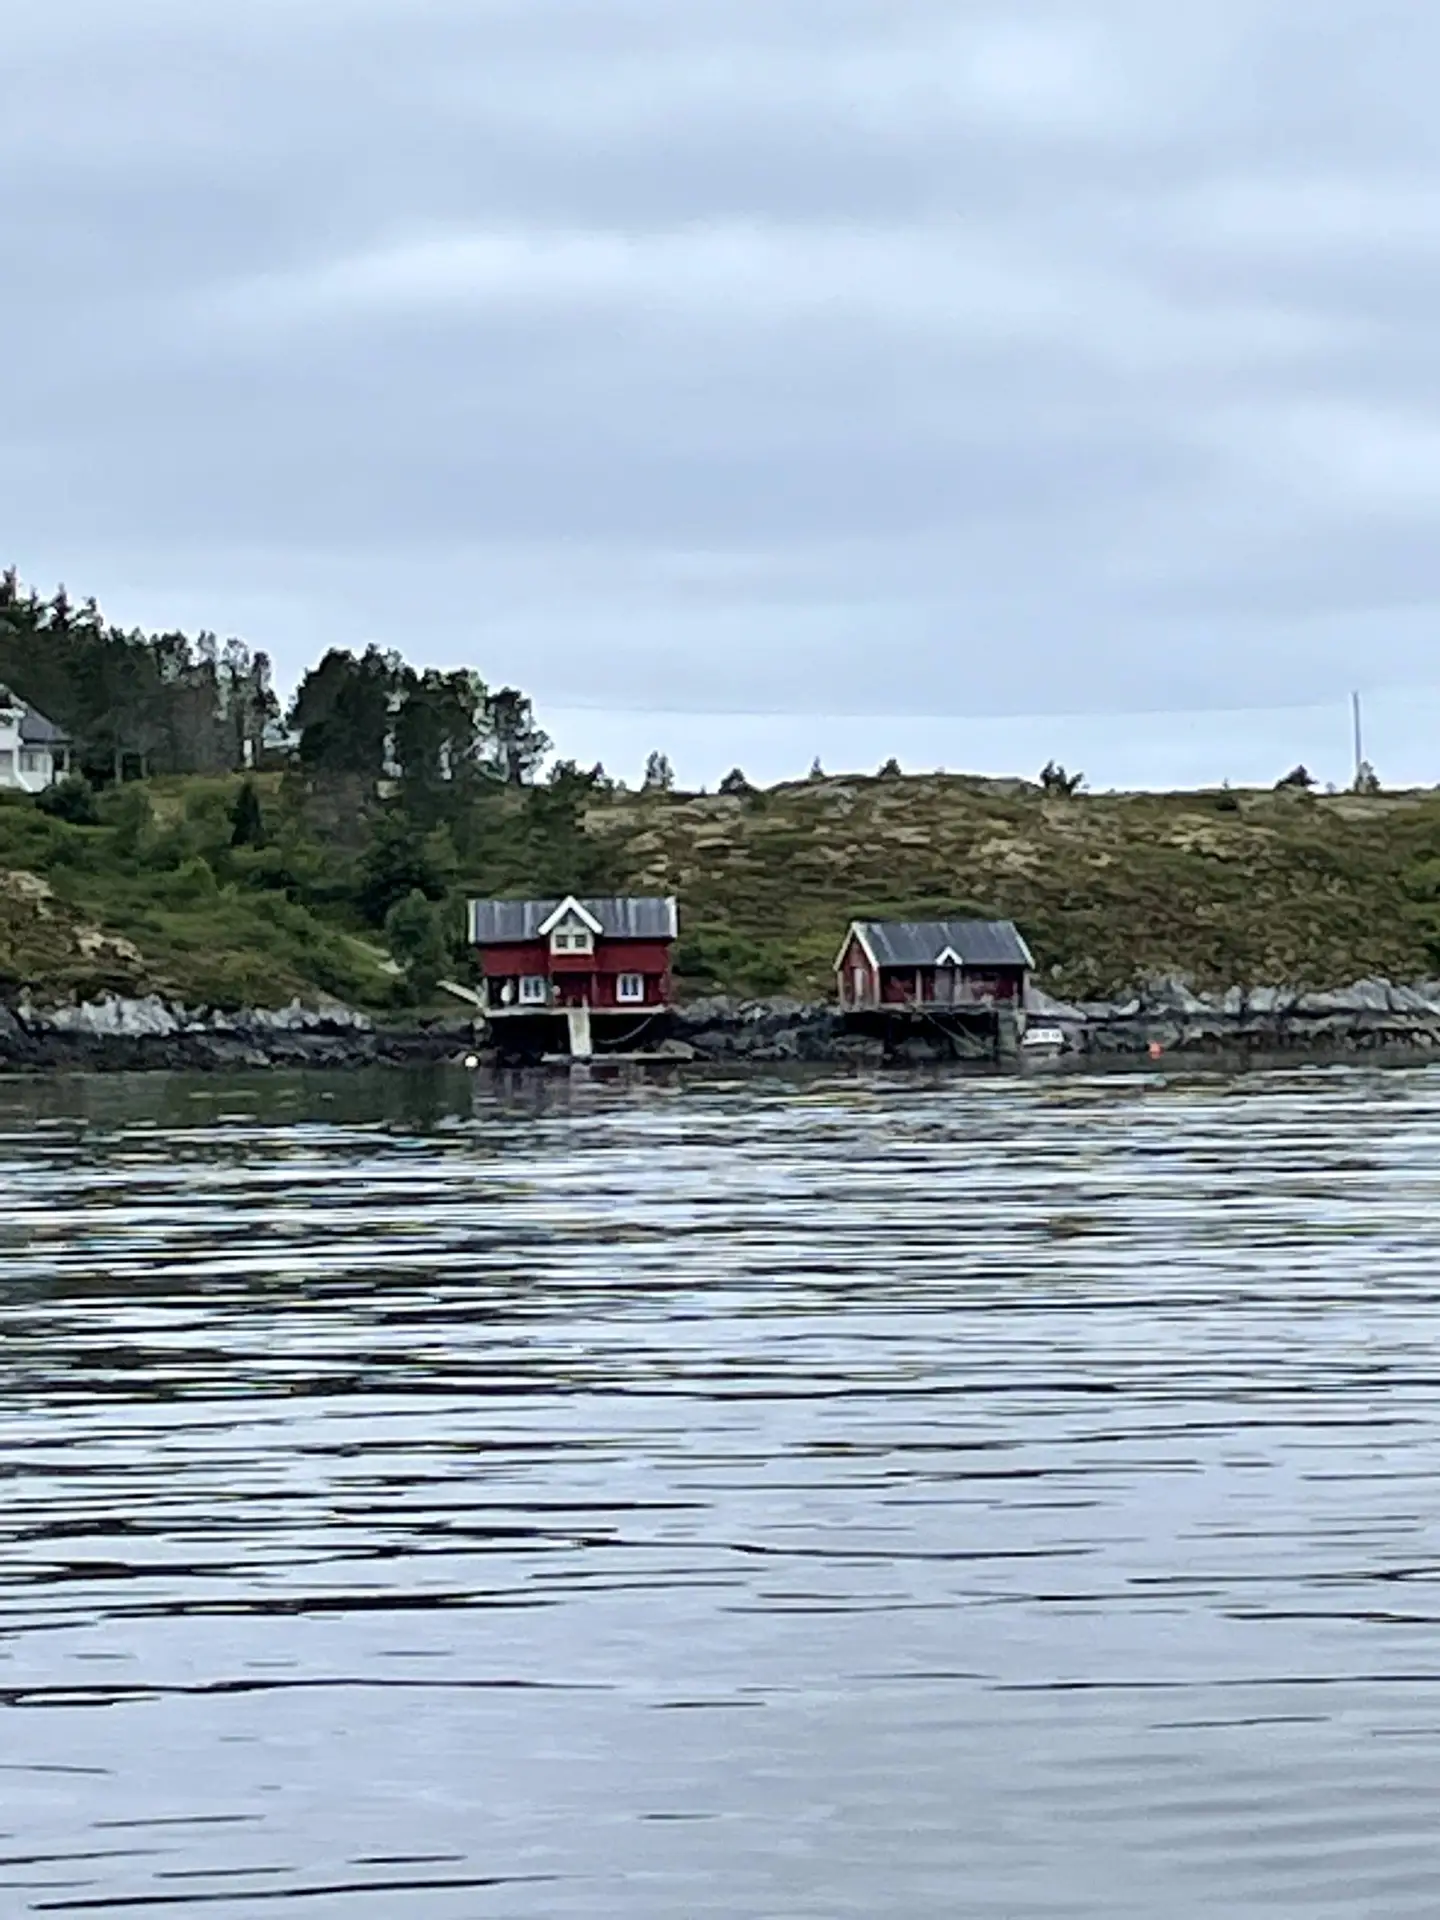 Bild zeigt eine ruhige Küstenansicht mit zwei traditionellen norwegischen roten Häusern, die direkt am Wasser gebaut sind. Die Häuser stehen auf einer felsigen Küstenlinie, umgeben von spärlicher Vegetation und einigen Bäumen. Das ruhige Meer im Vordergrund spiegelt leicht die grauen Wolken des bedeckten Himmels wider.